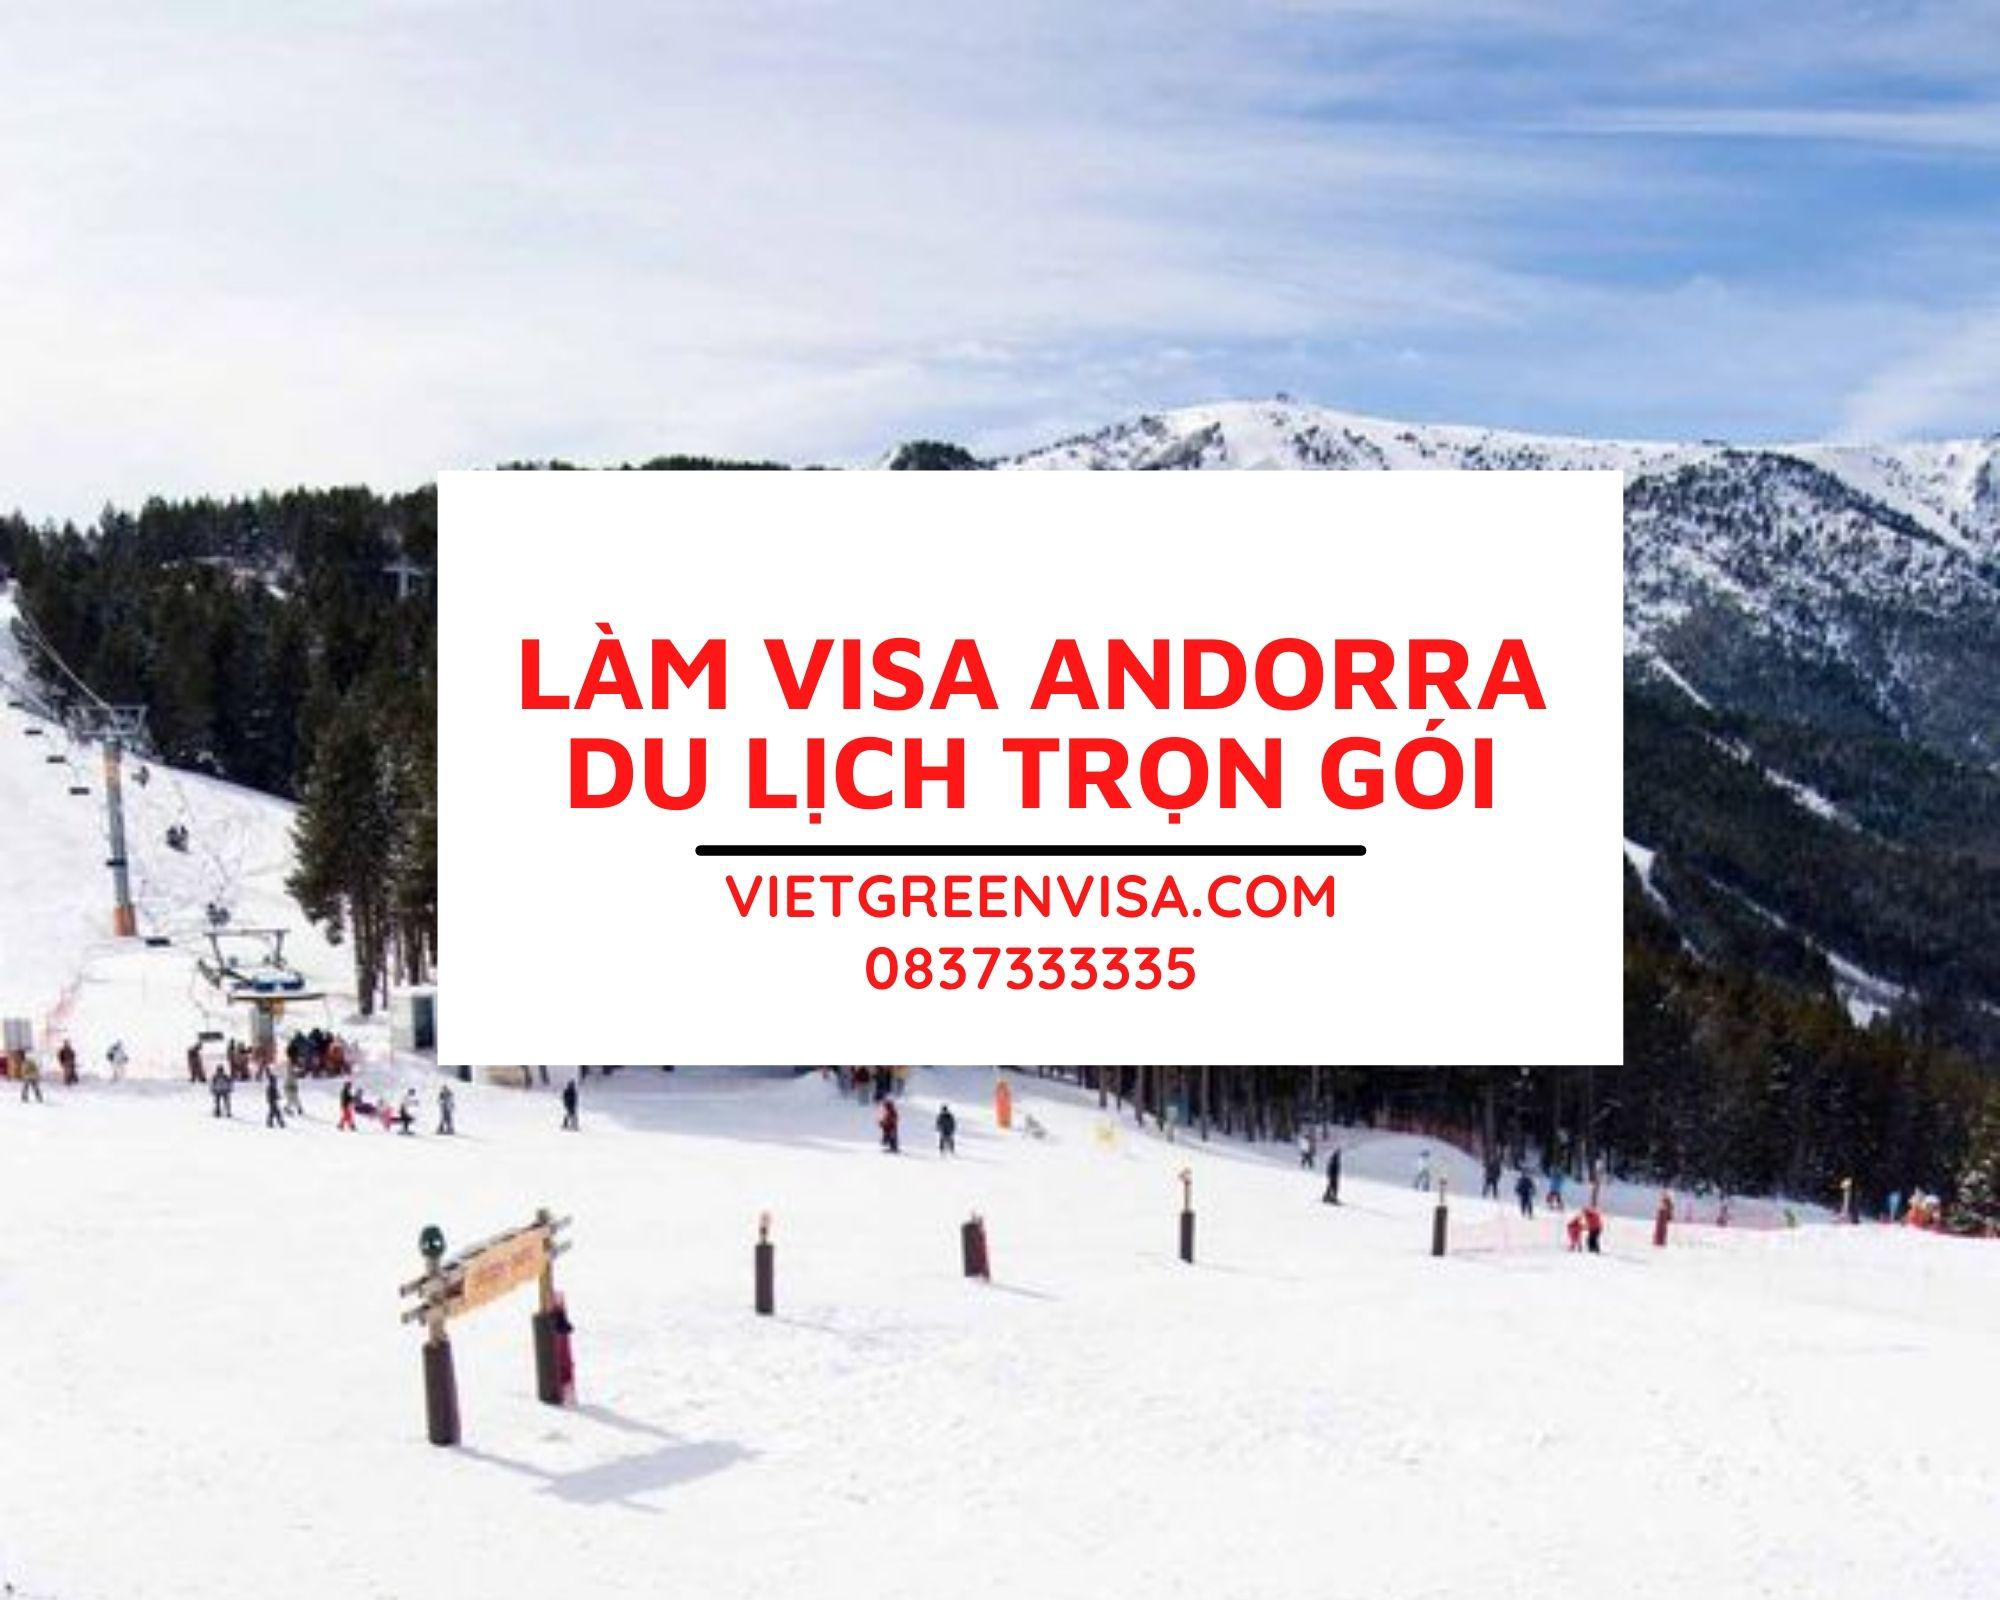 Dịch vụ làm visa du lịch Andorra nhanh chóng